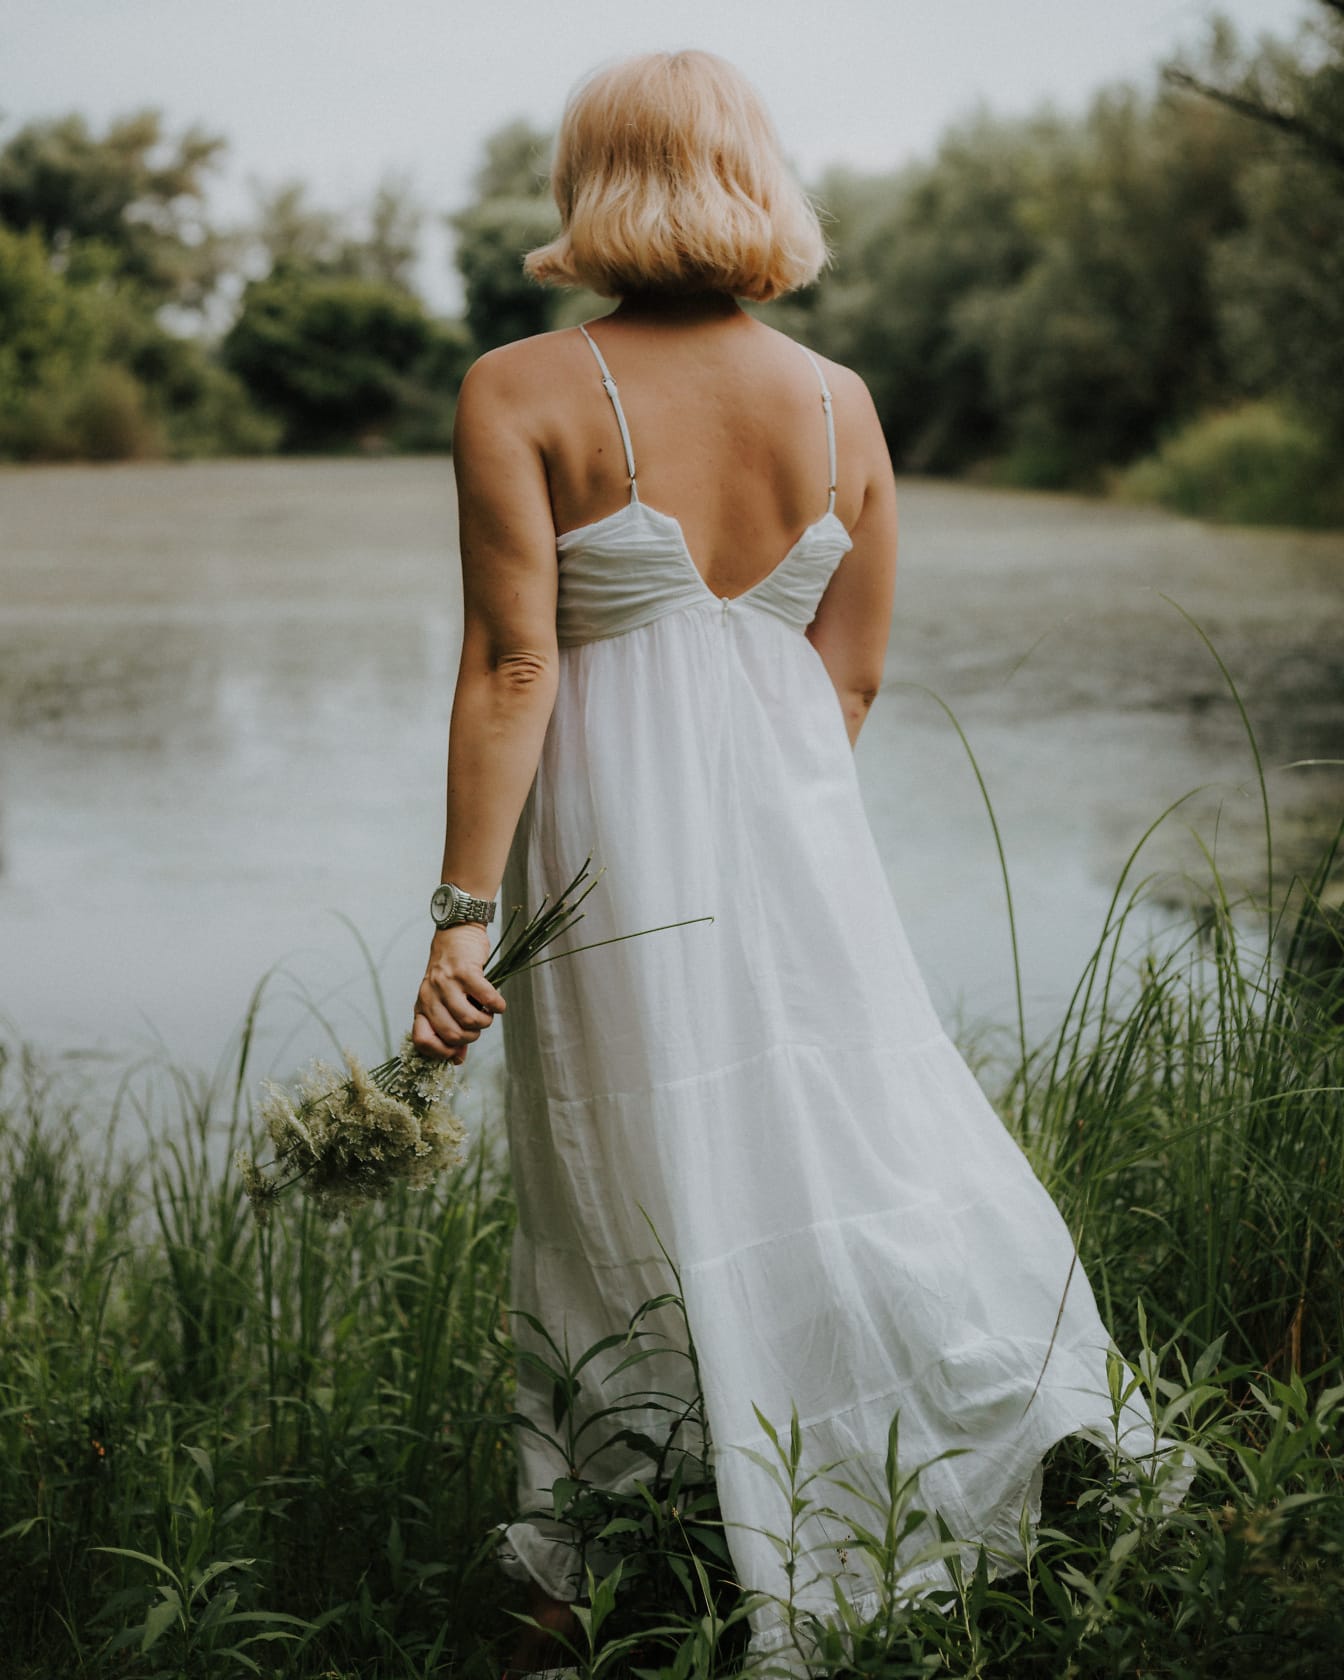 Κλασικό παλιομοδίτικο εξώπλατο λευκό φόρεμα σε ξανθό φωτογραφικό μοντέλο